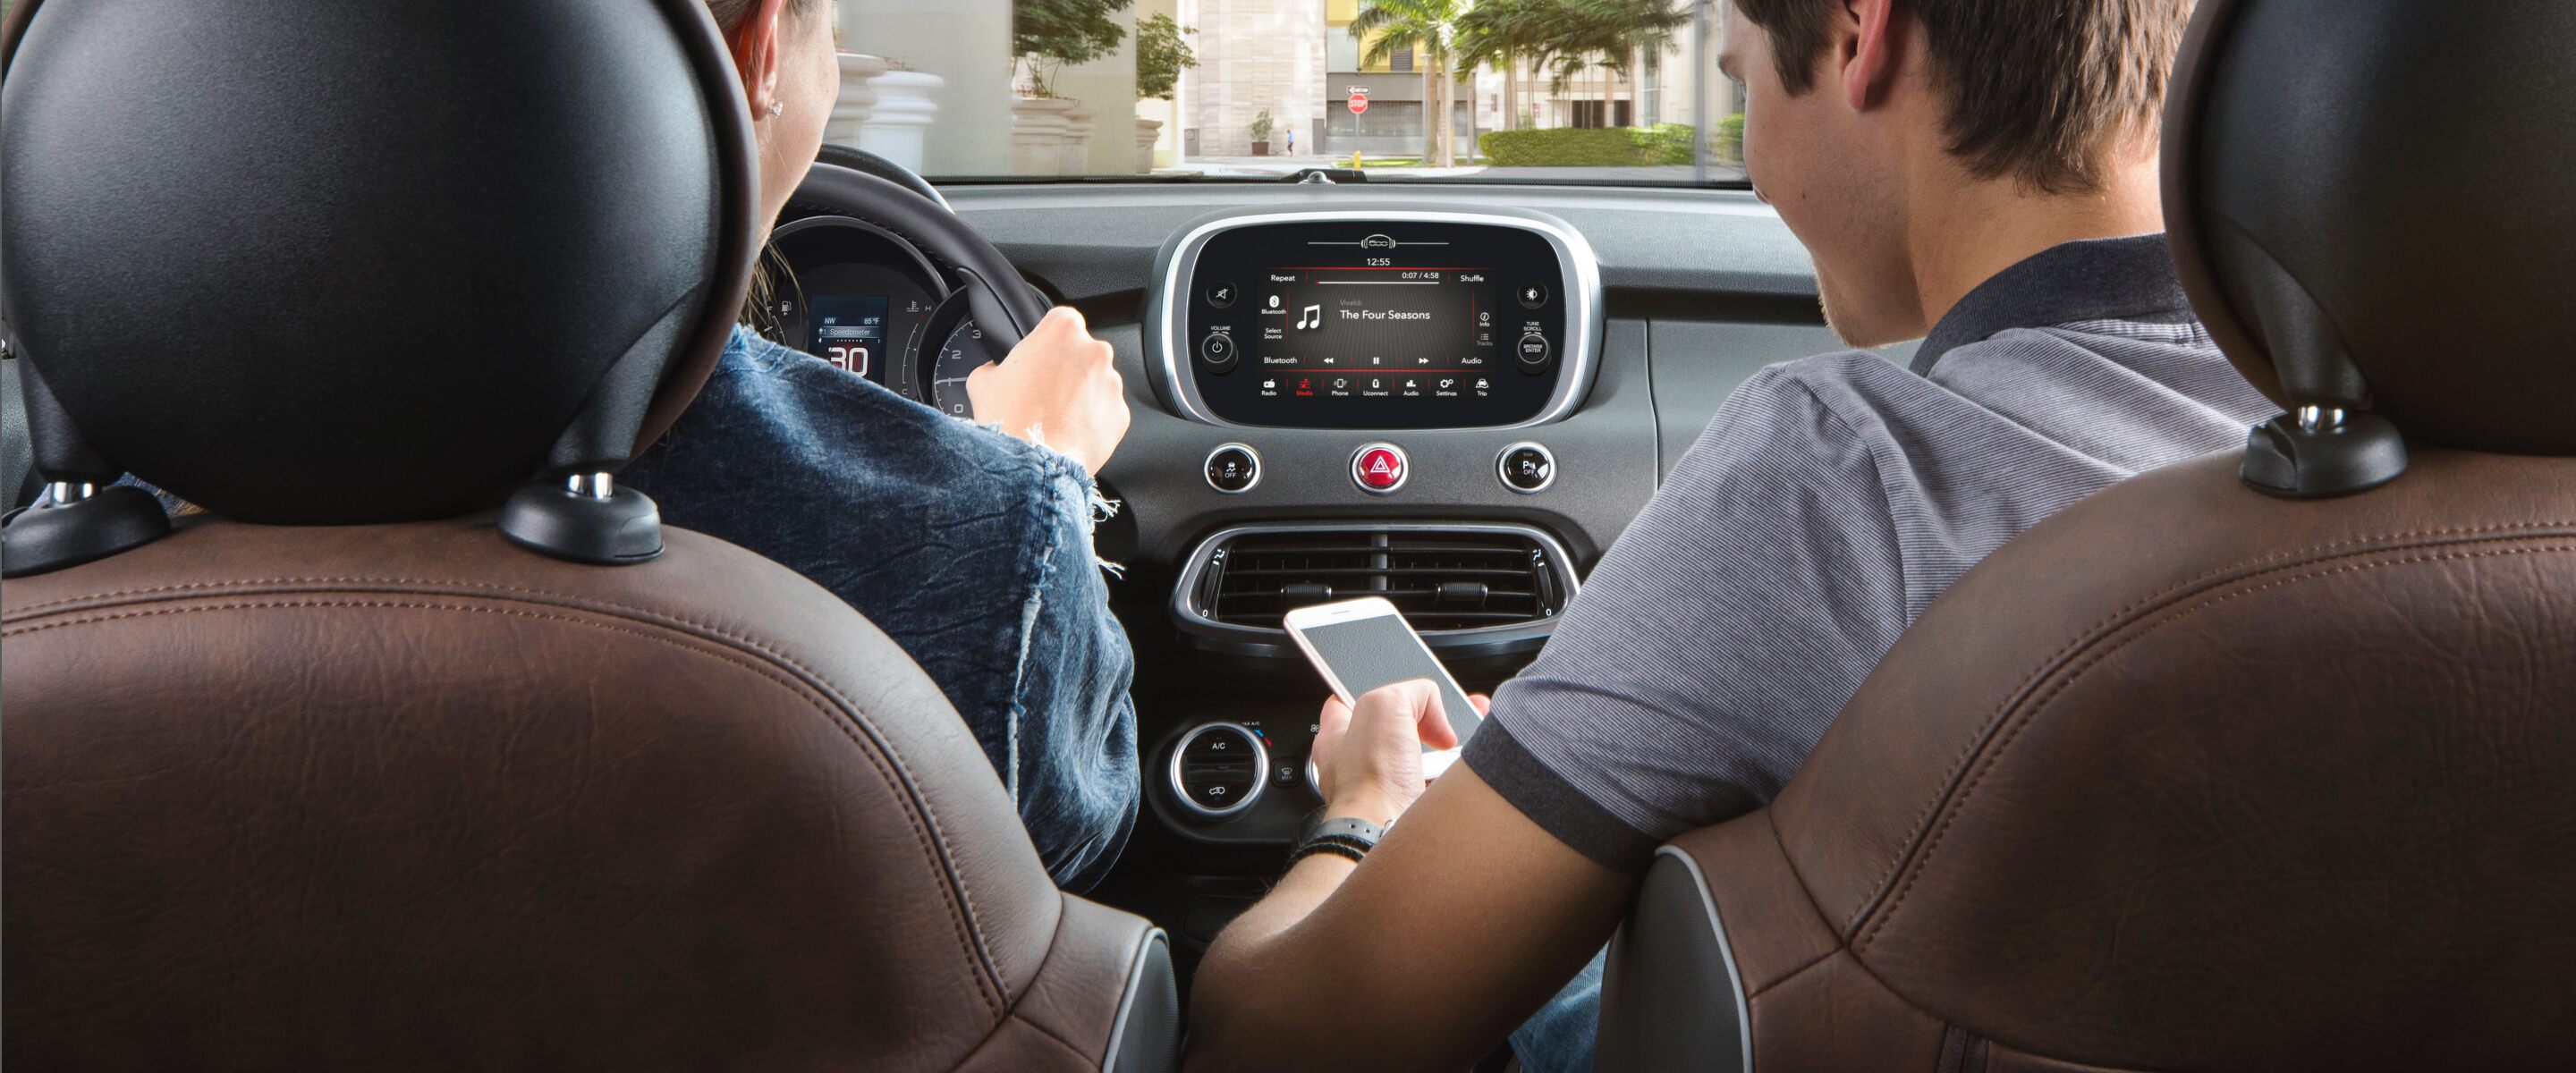 Altavoz Bluetooth para coche Bluetooth en el del coche para hablar